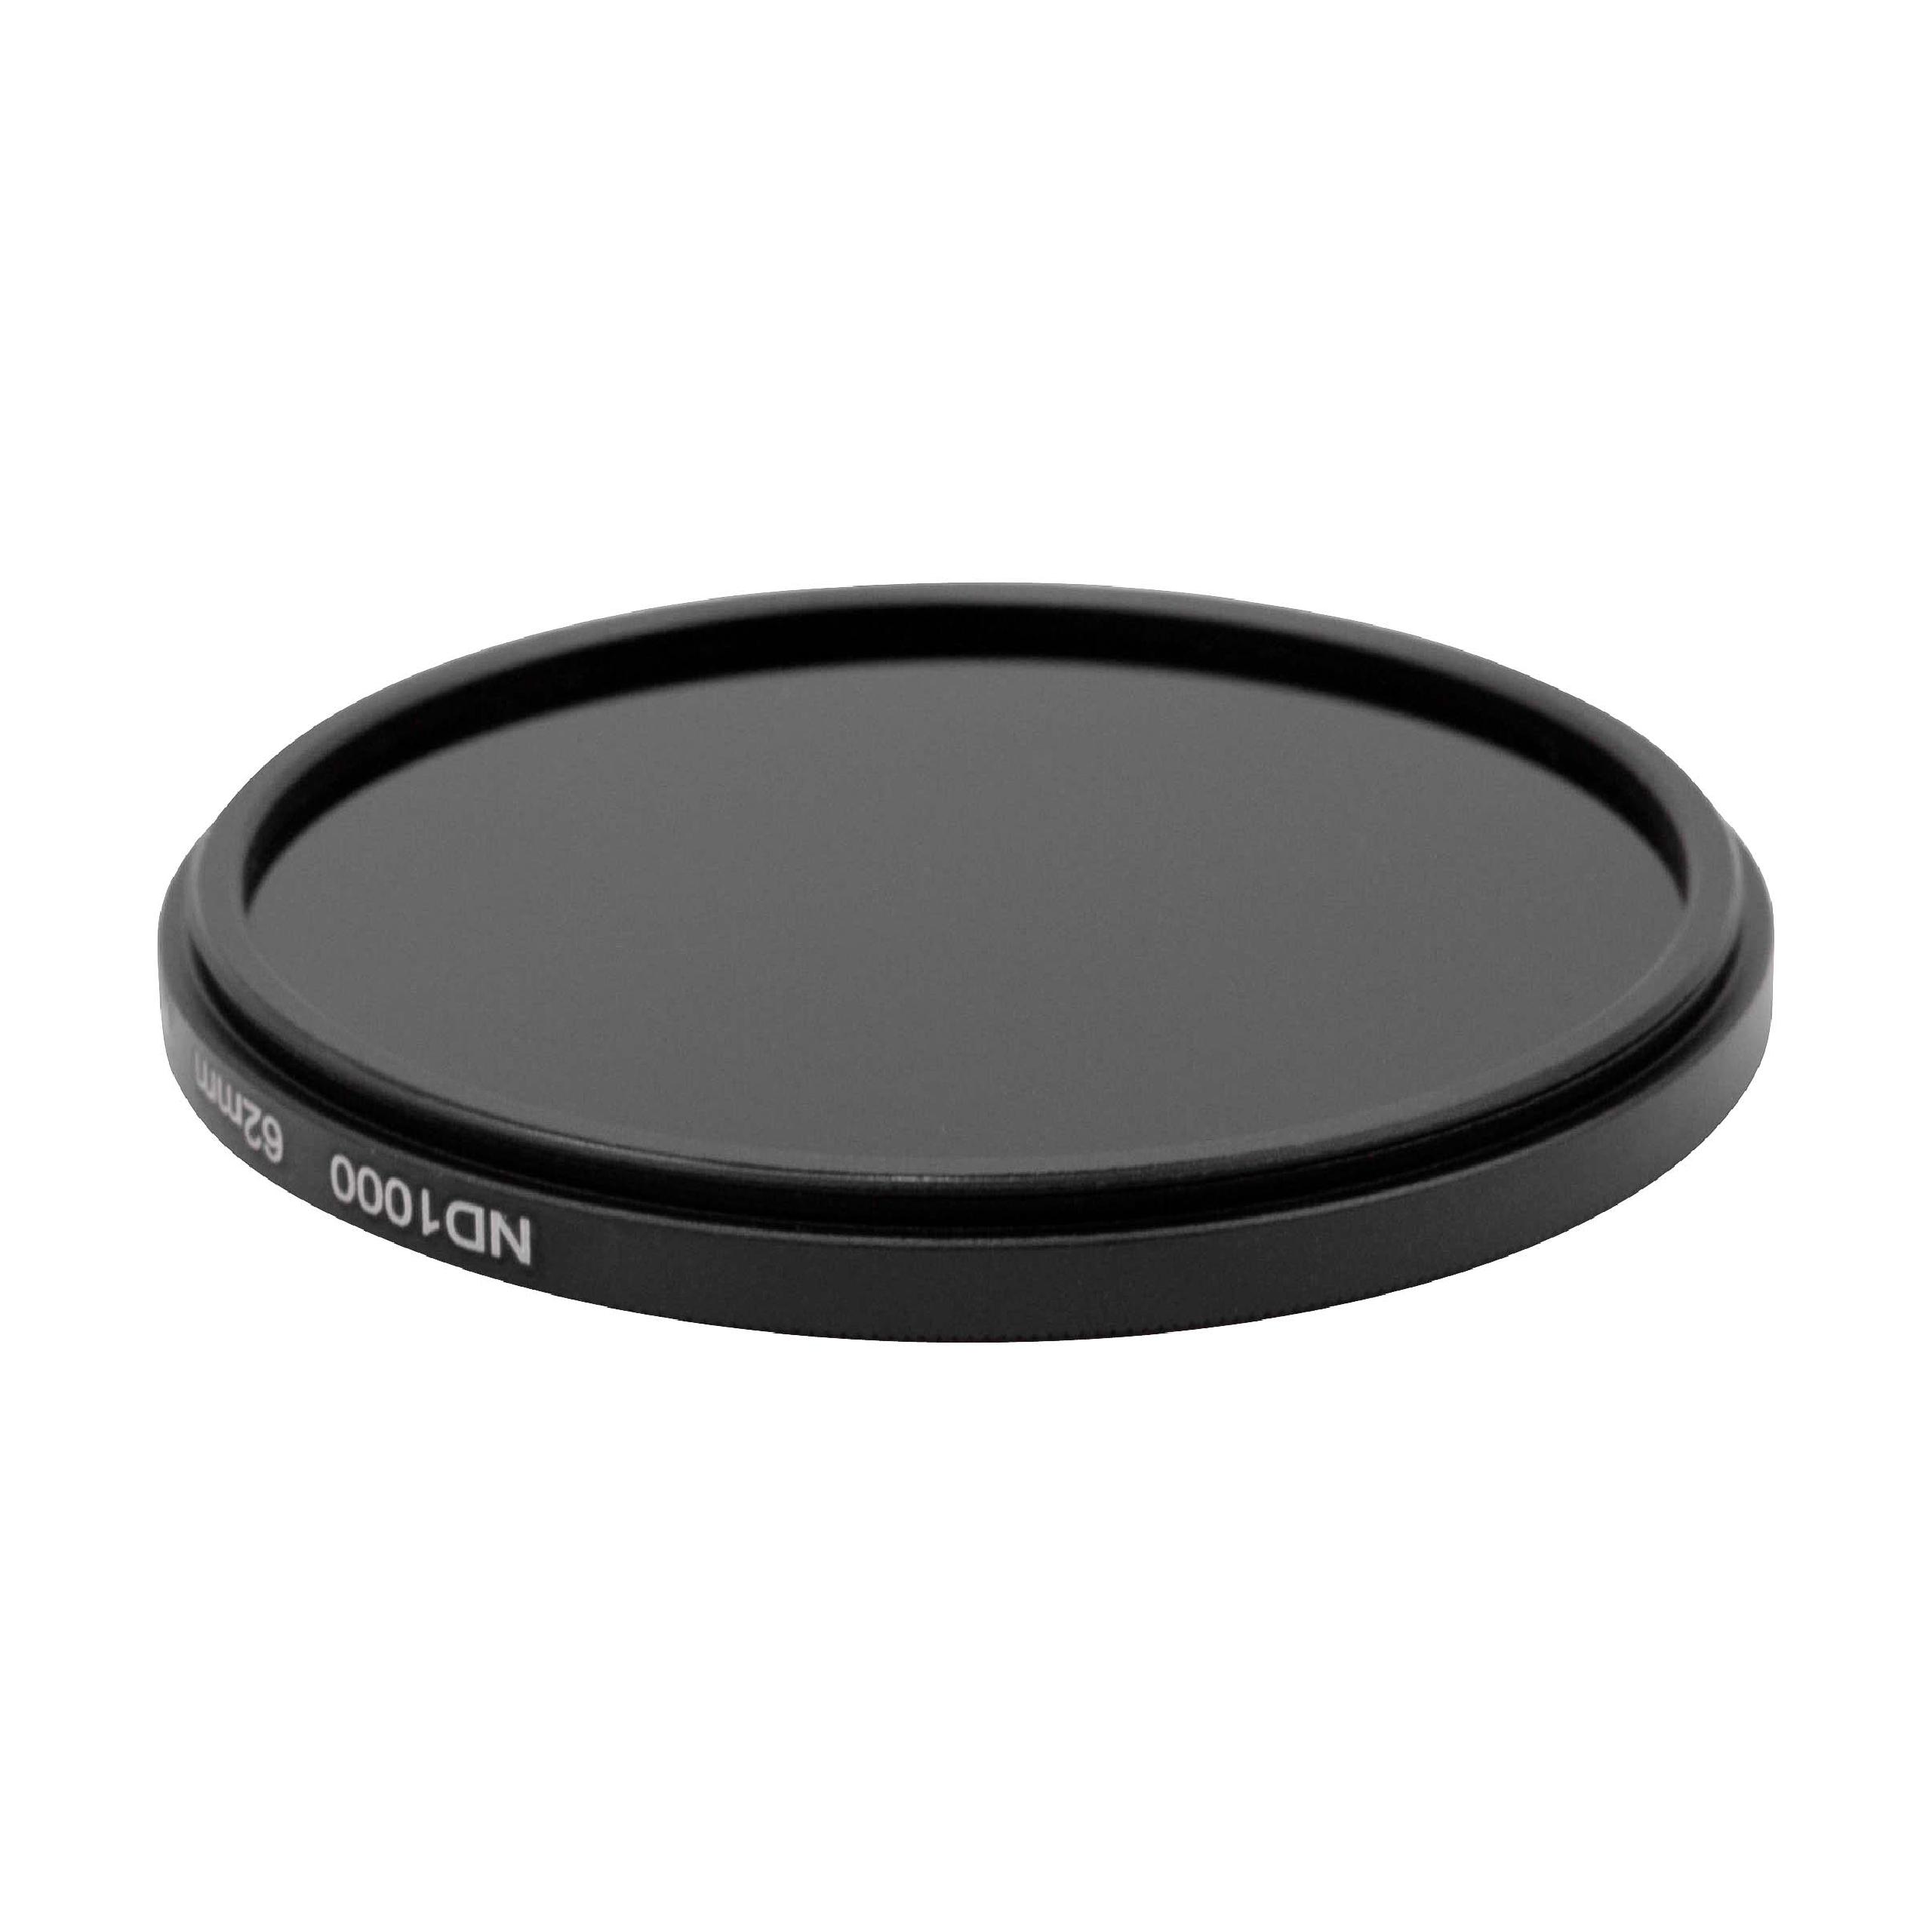 Filtro ND universal ND 1000 para objetivos de cámara con rosca de filtro de 62 mm - Filtro gris